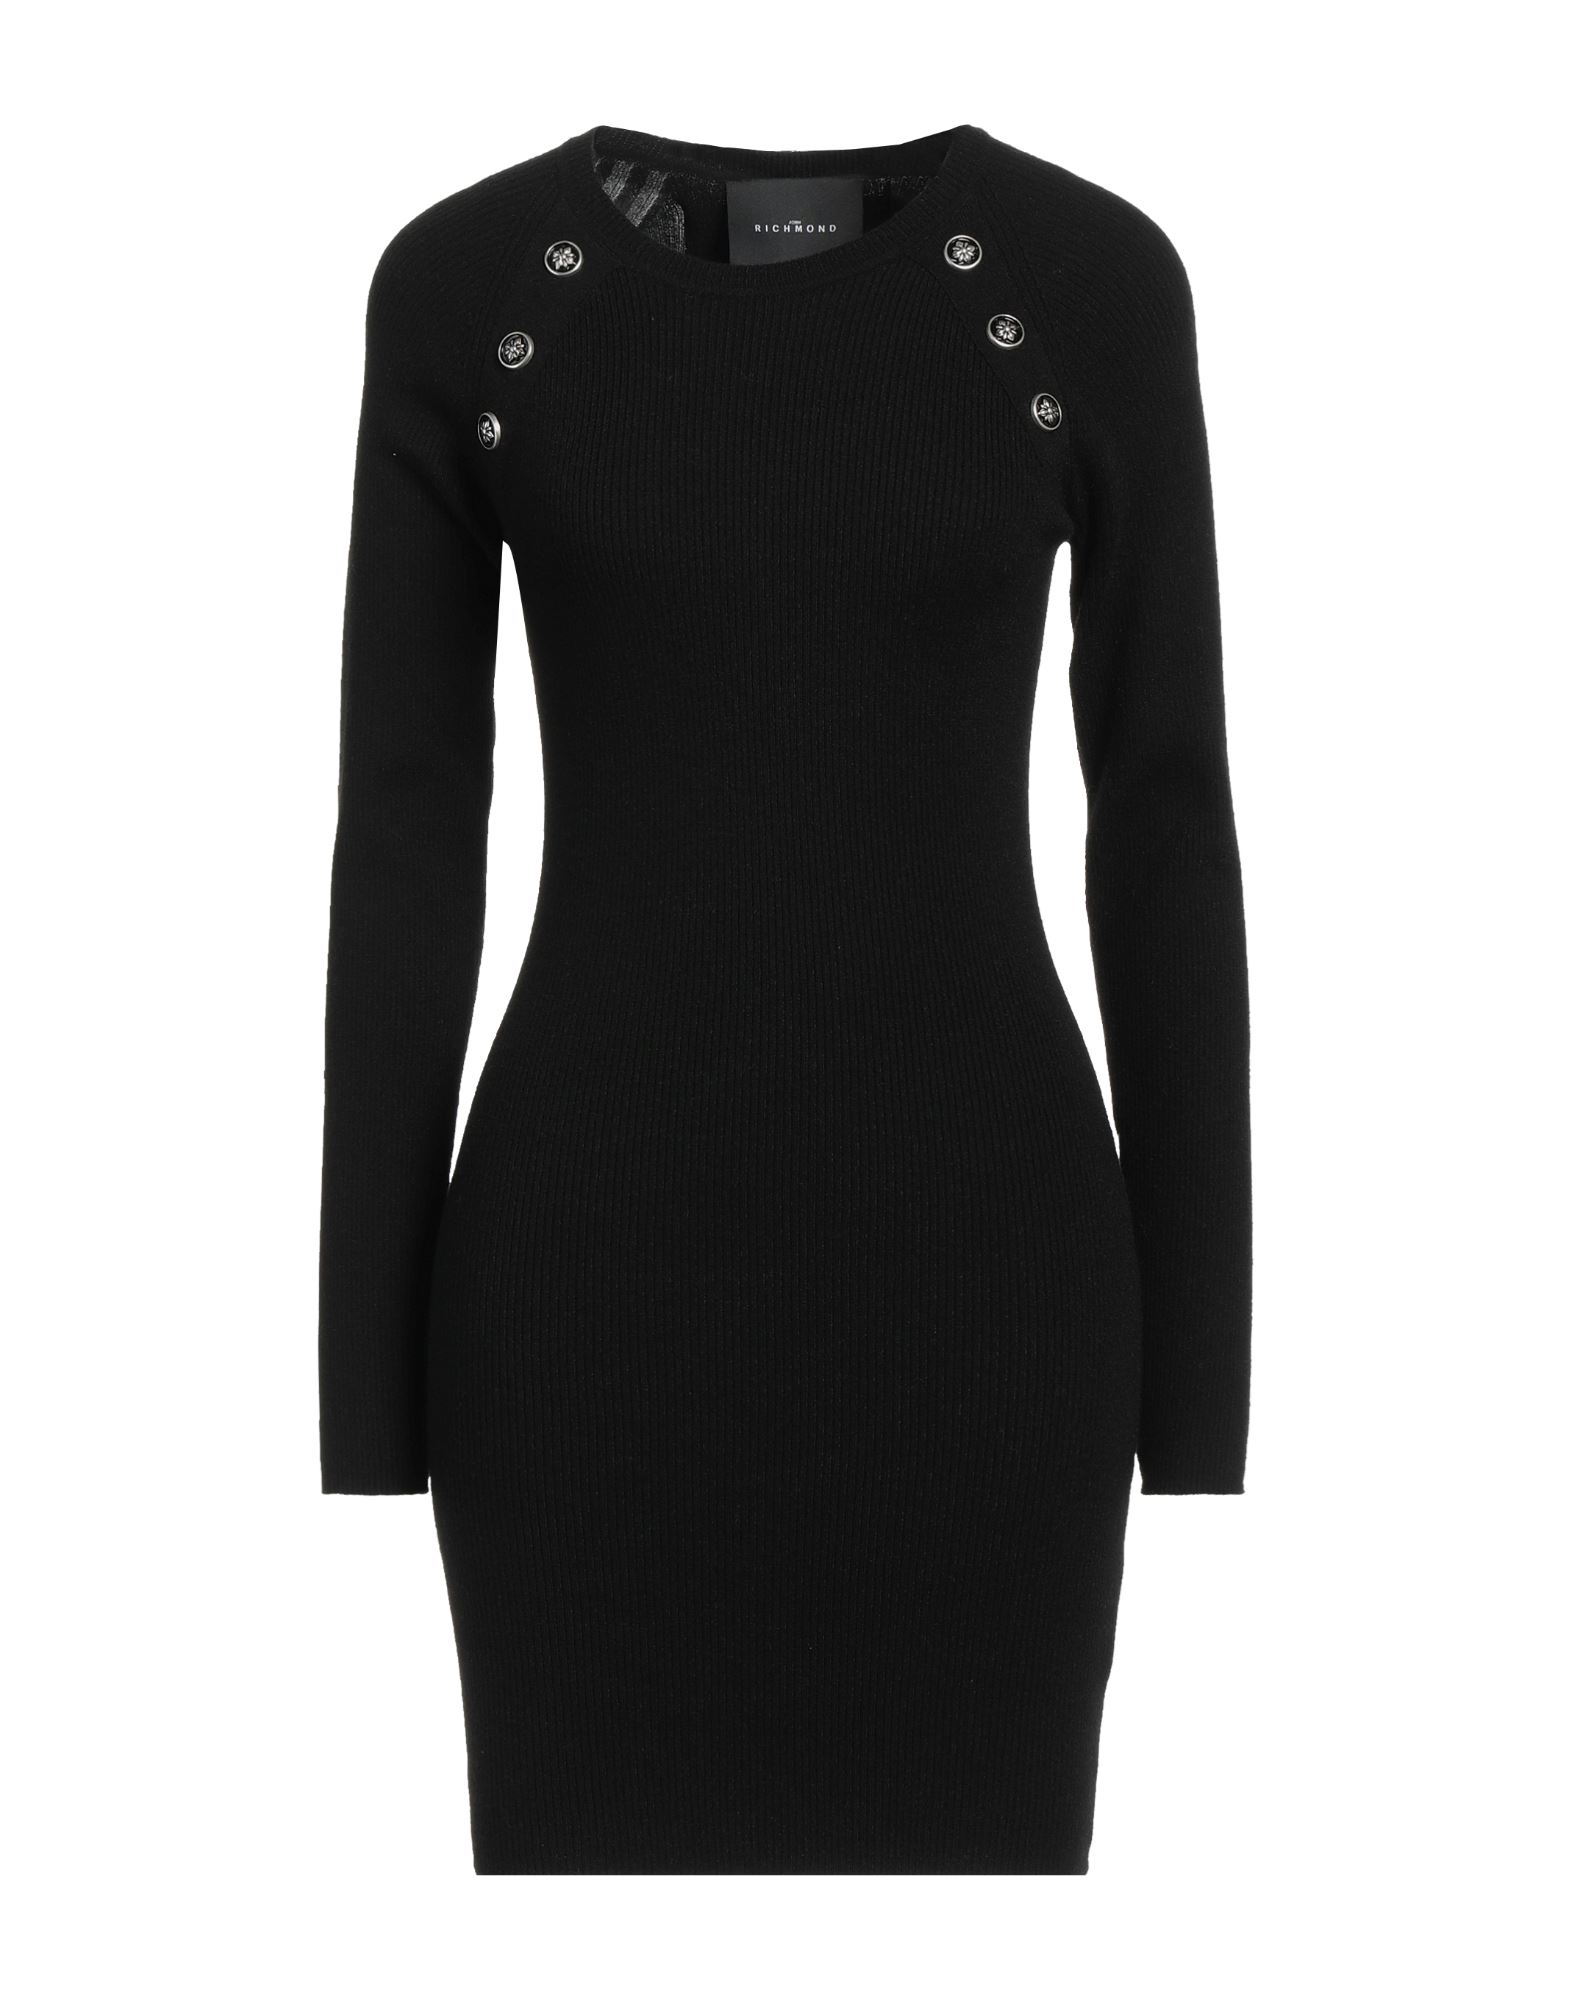 Shop John Richmond Woman Mini Dress Black Size L Viscose, Polyester, Nylon